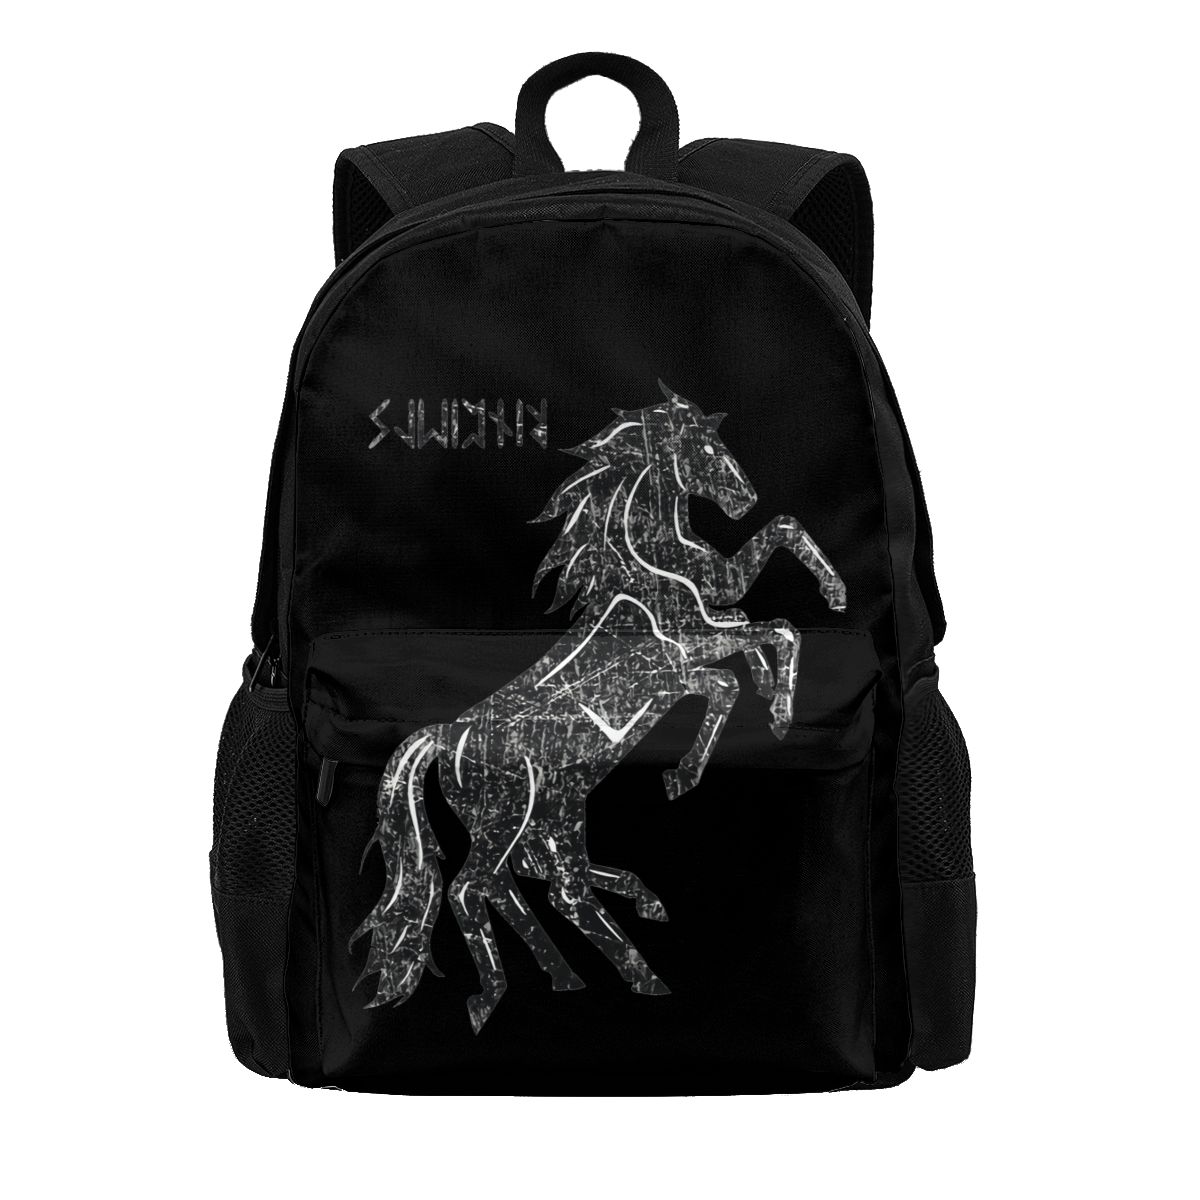 Sleipnir Odin's Horse Large Capacity Viking Backpack